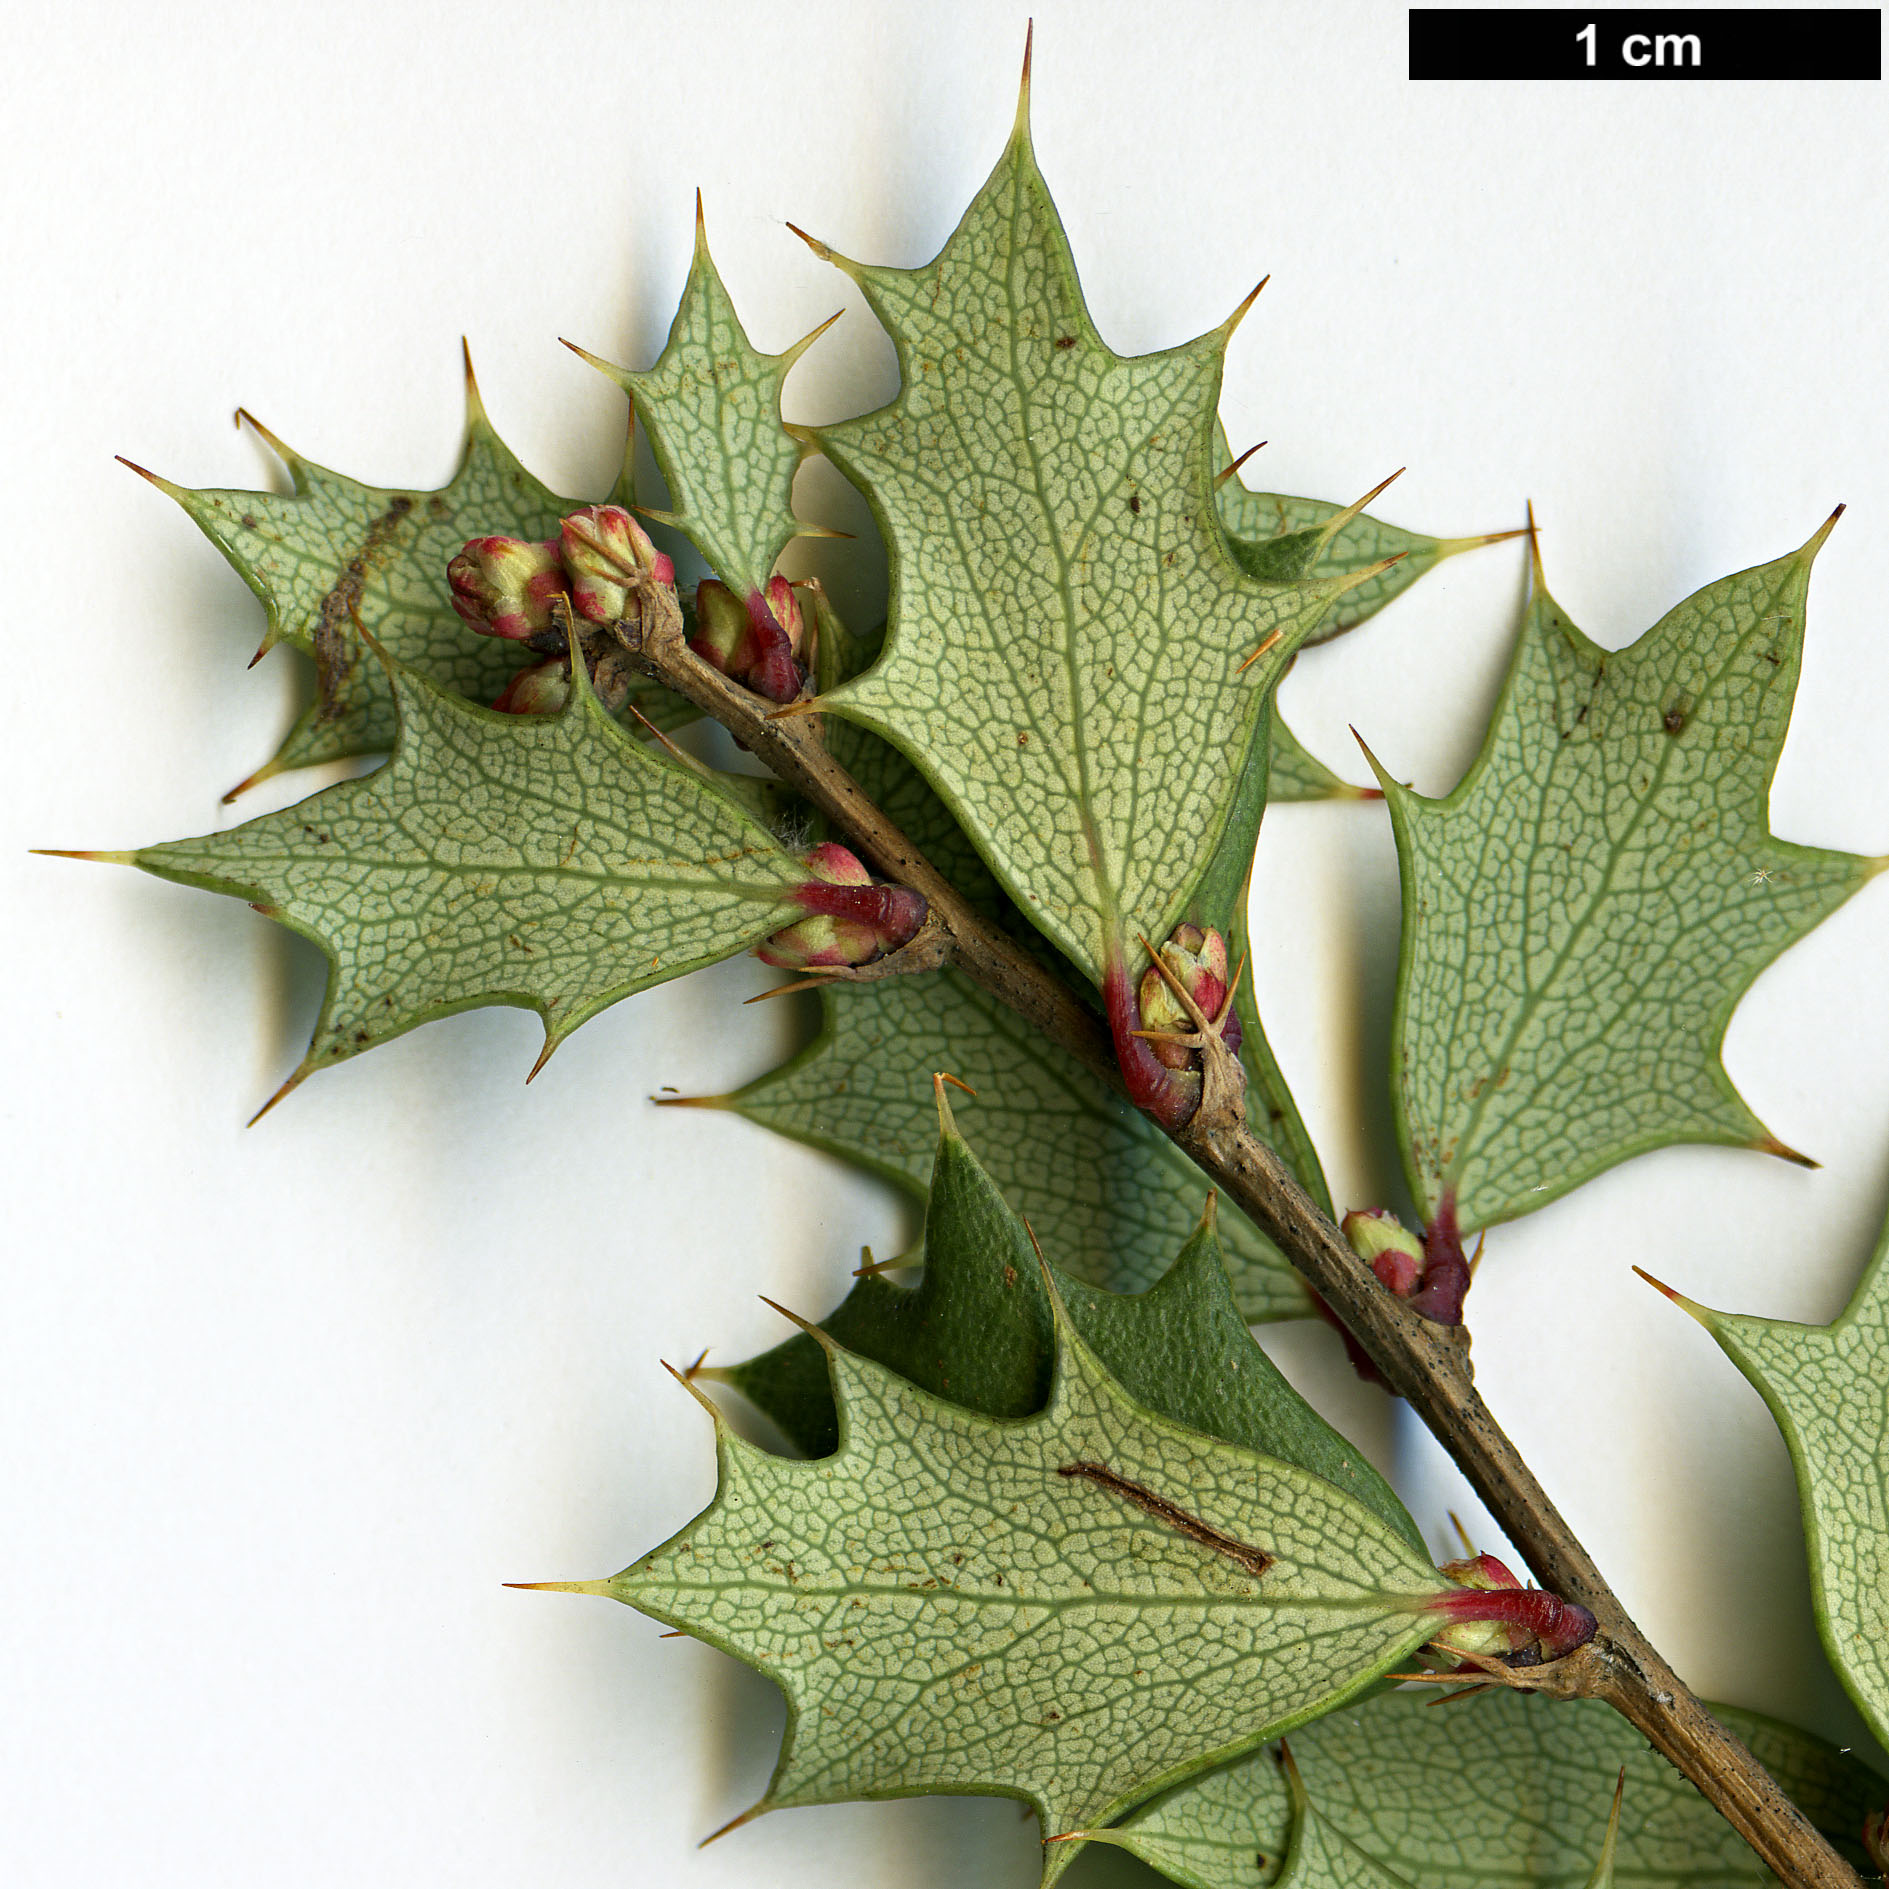 High resolution image: Family: Berberidaceae - Genus: Berberis - Taxon: chilensis